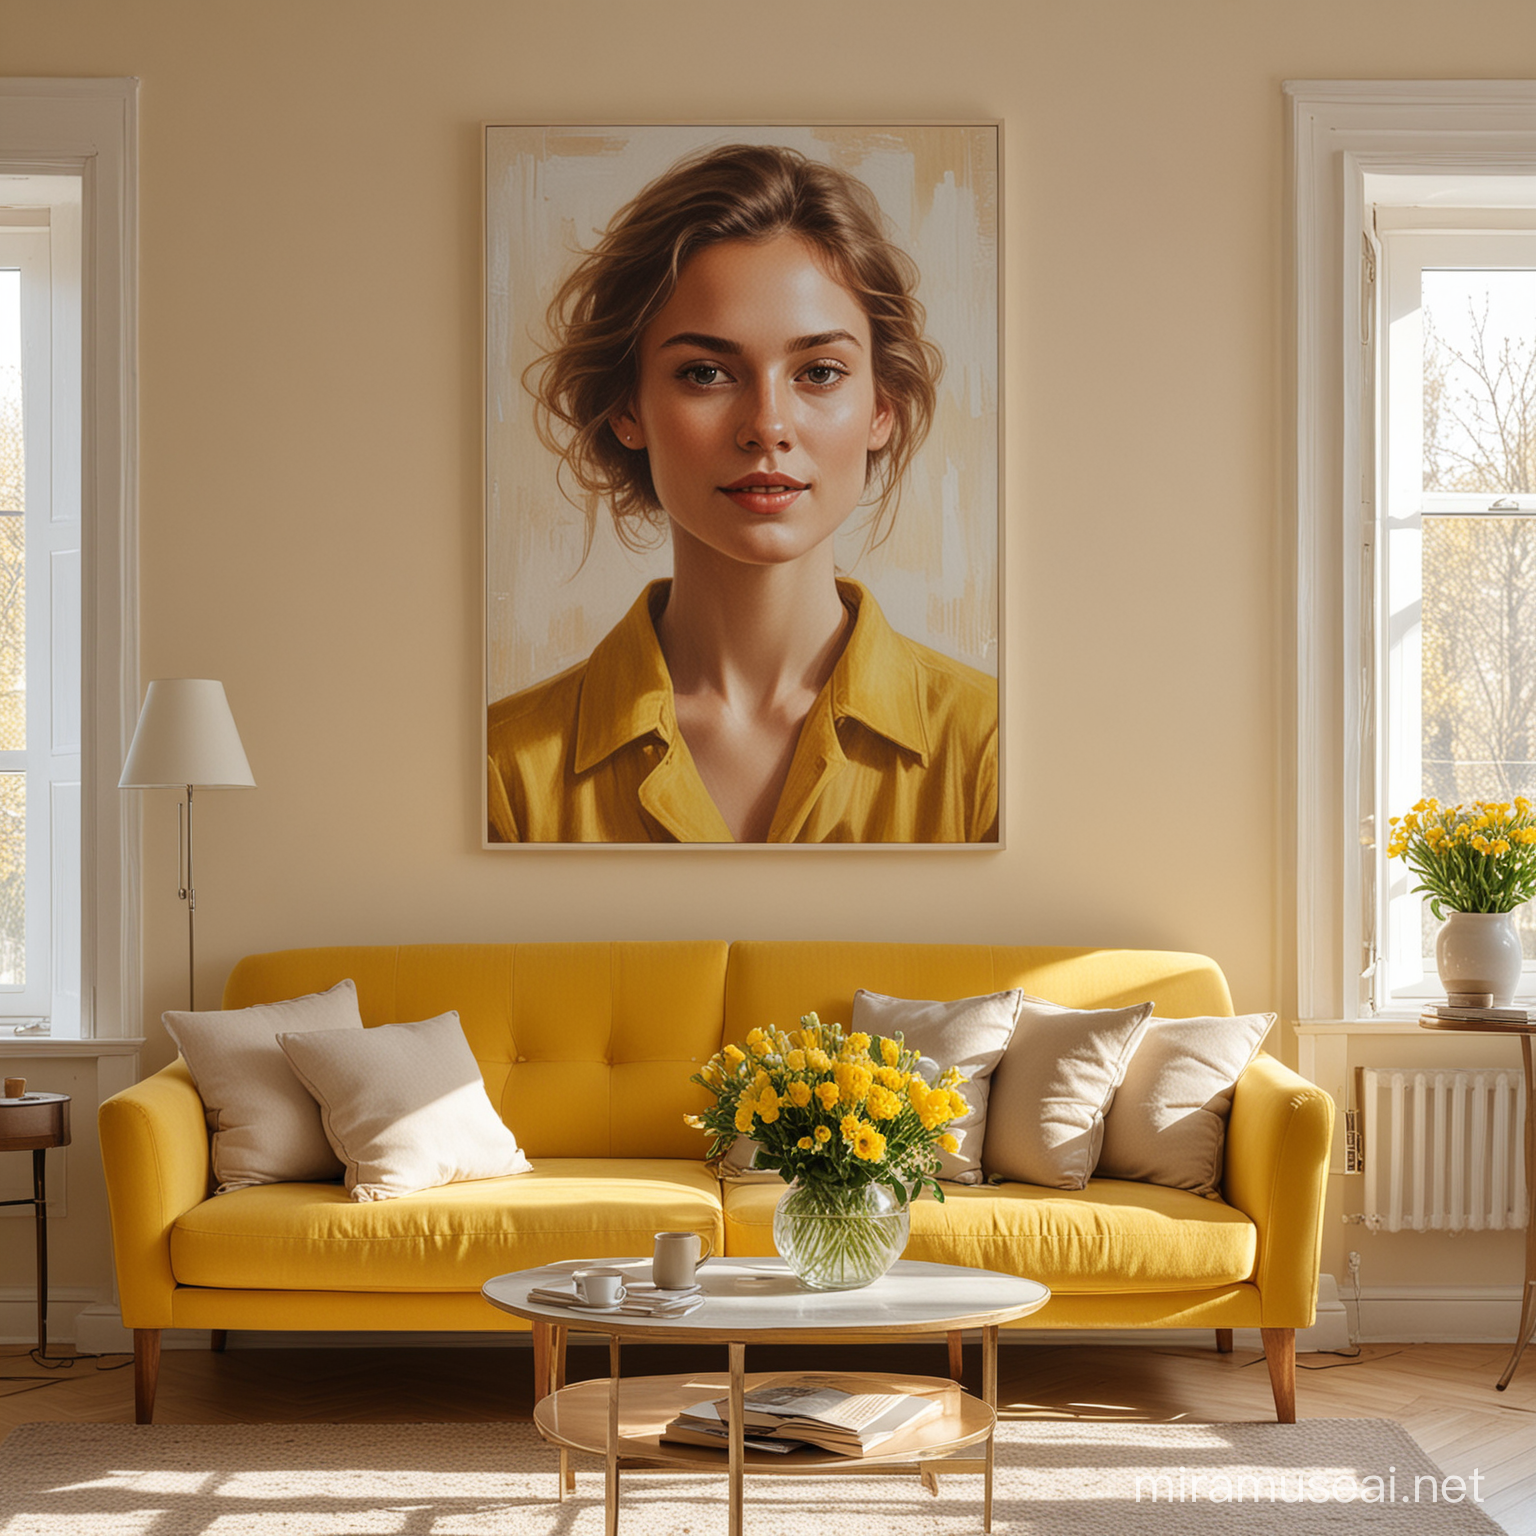 Ein helles Wohnzimmer im Sonnenlicht in gelb, beige, ein Kunstwerk mit einem Portrait hängt an der Wand hinter dem Sofa. Blumen sind auf dem Tisch, Licht und Schatten